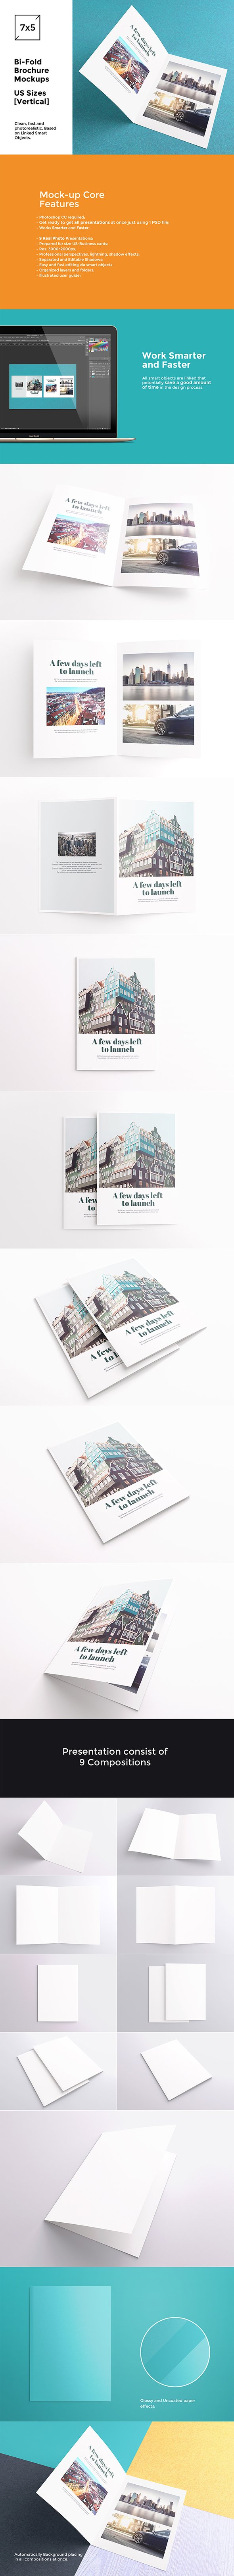 Bi-Fold Brochure / Flyer Mockups cover image.